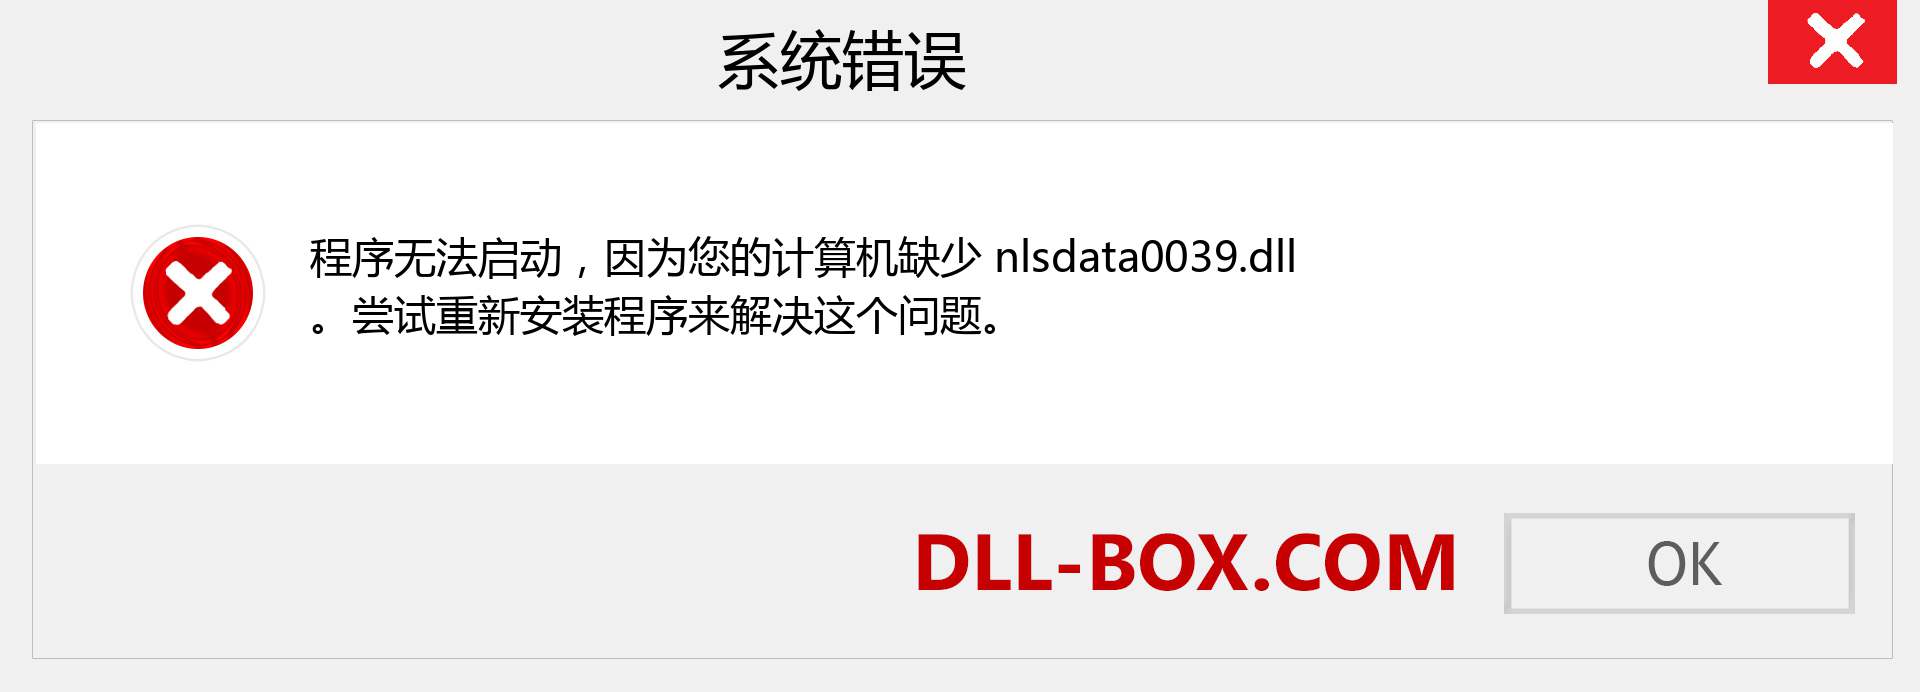 nlsdata0039.dll 文件丢失？。 适用于 Windows 7、8、10 的下载 - 修复 Windows、照片、图像上的 nlsdata0039 dll 丢失错误